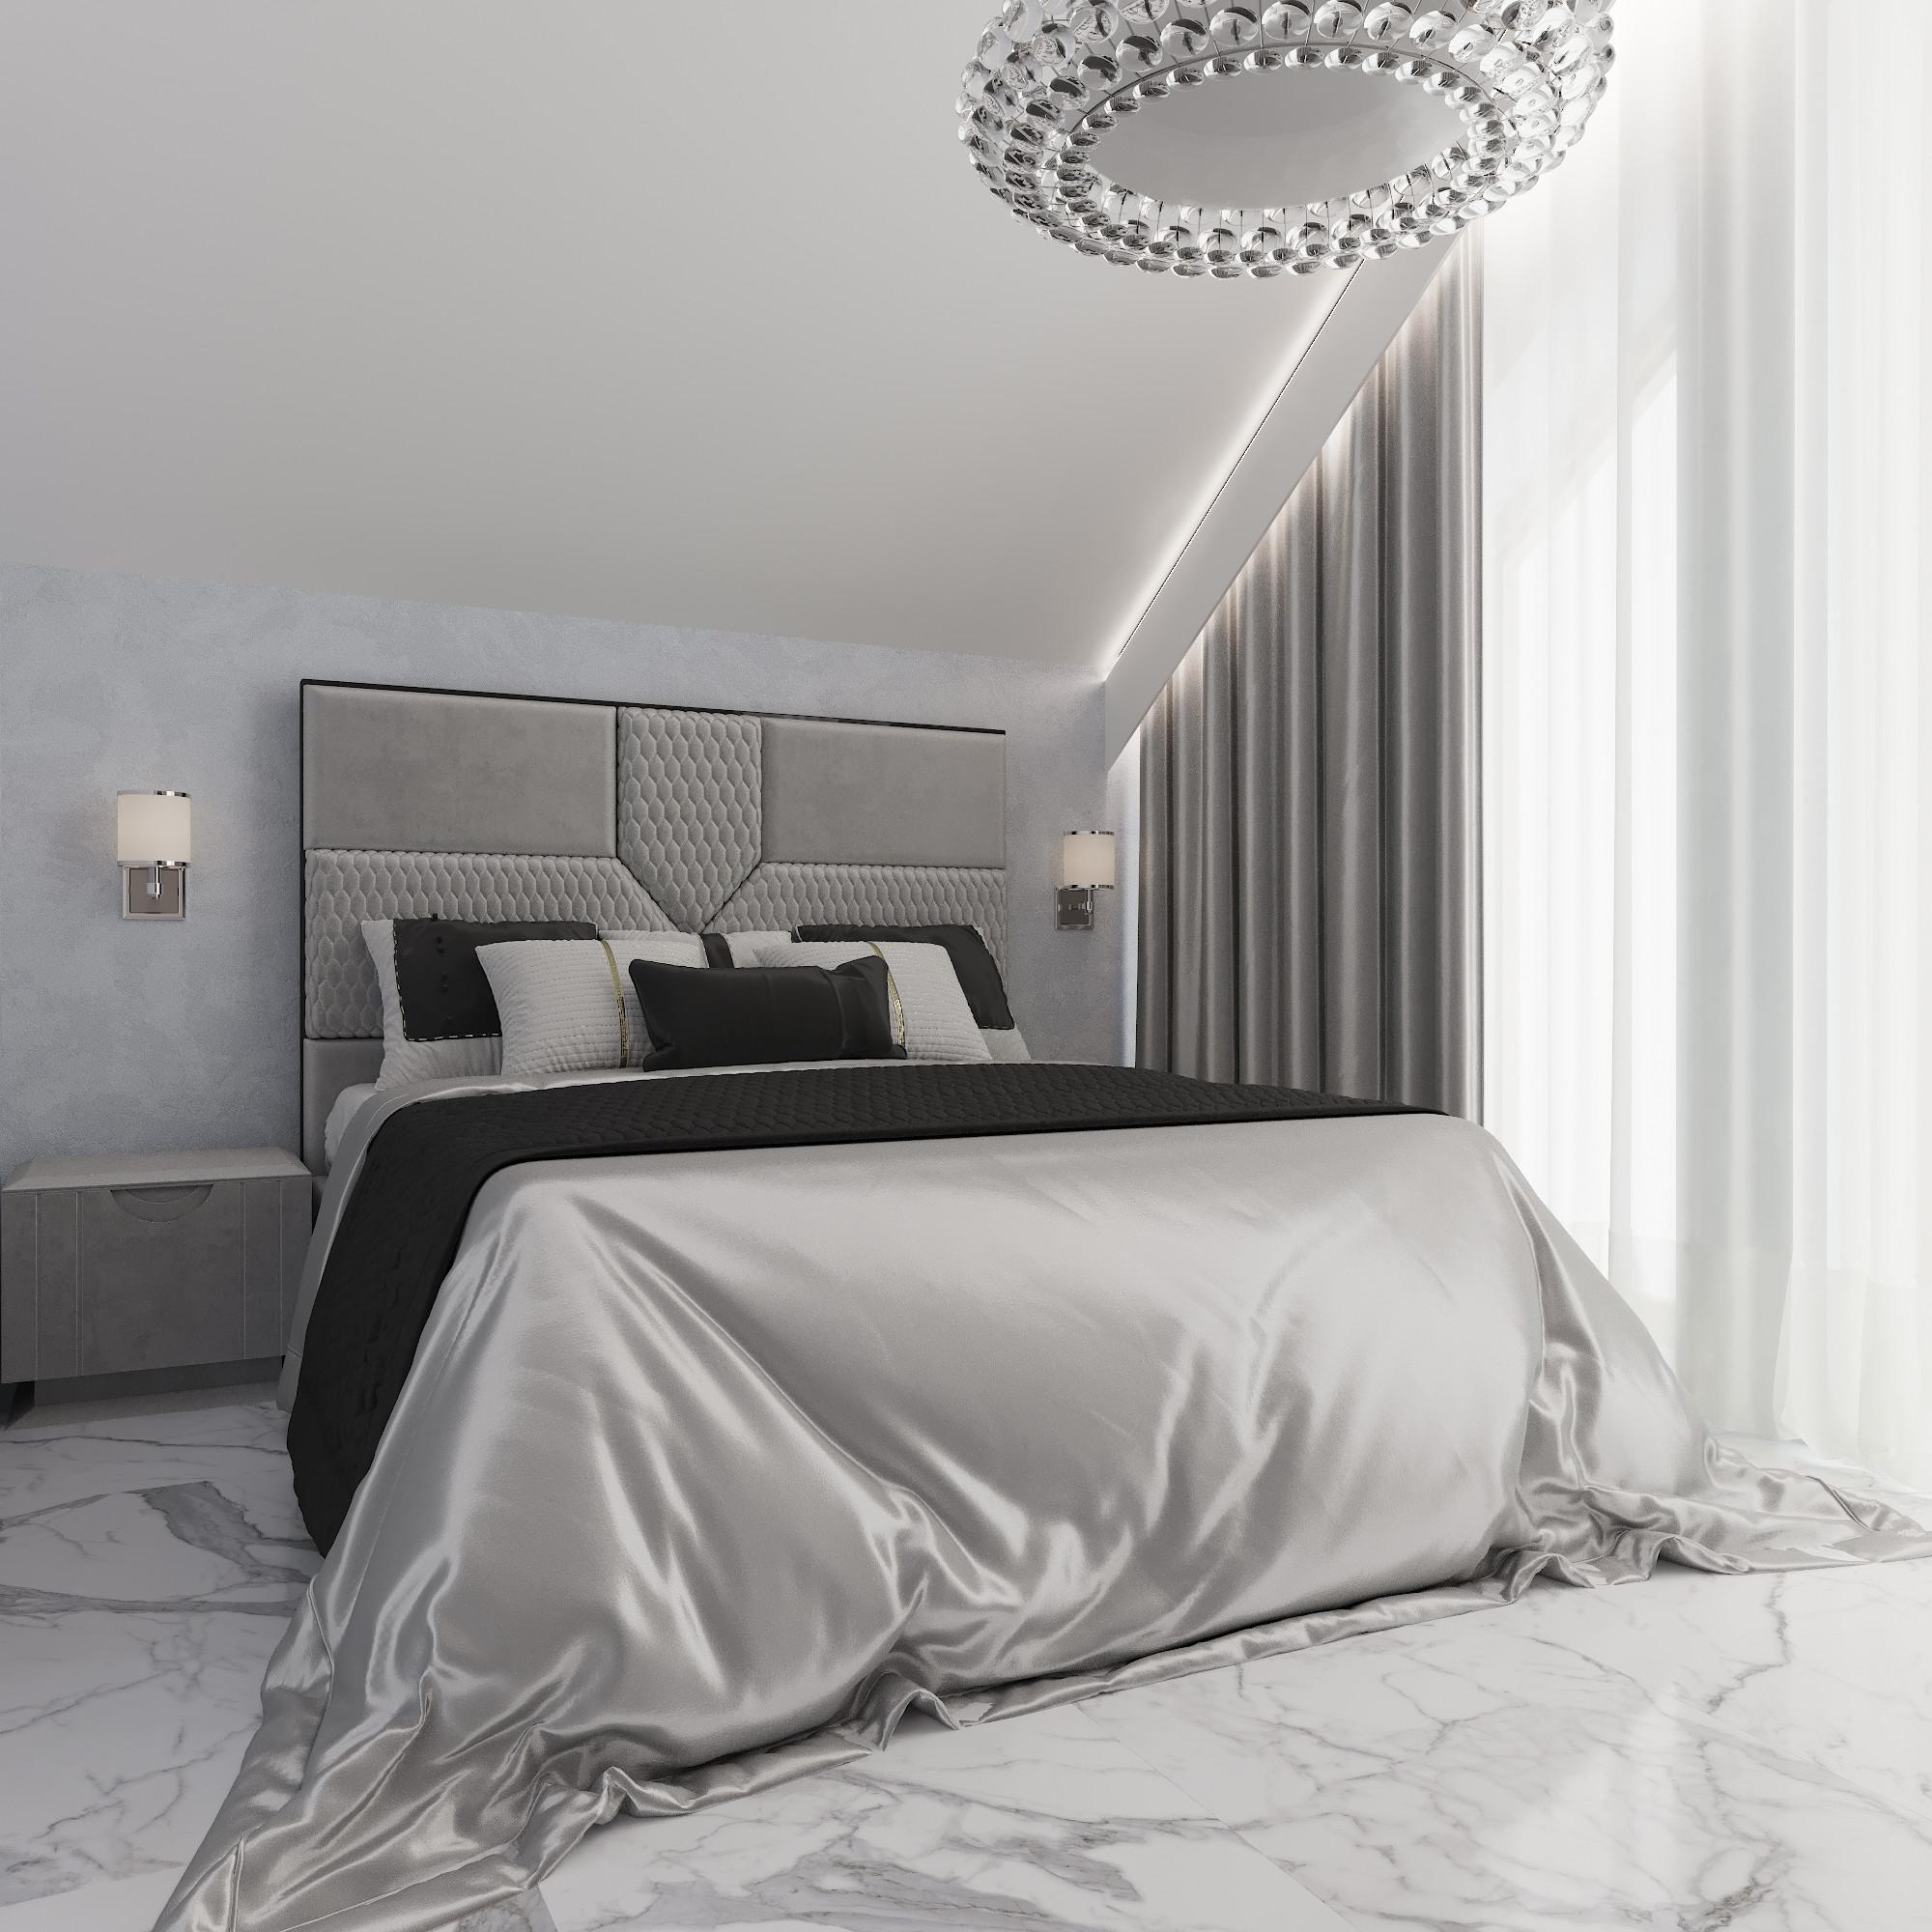 Интерьер спальни cветовыми линиями, подсветкой настенной и светильниками над кроватью в современном стиле